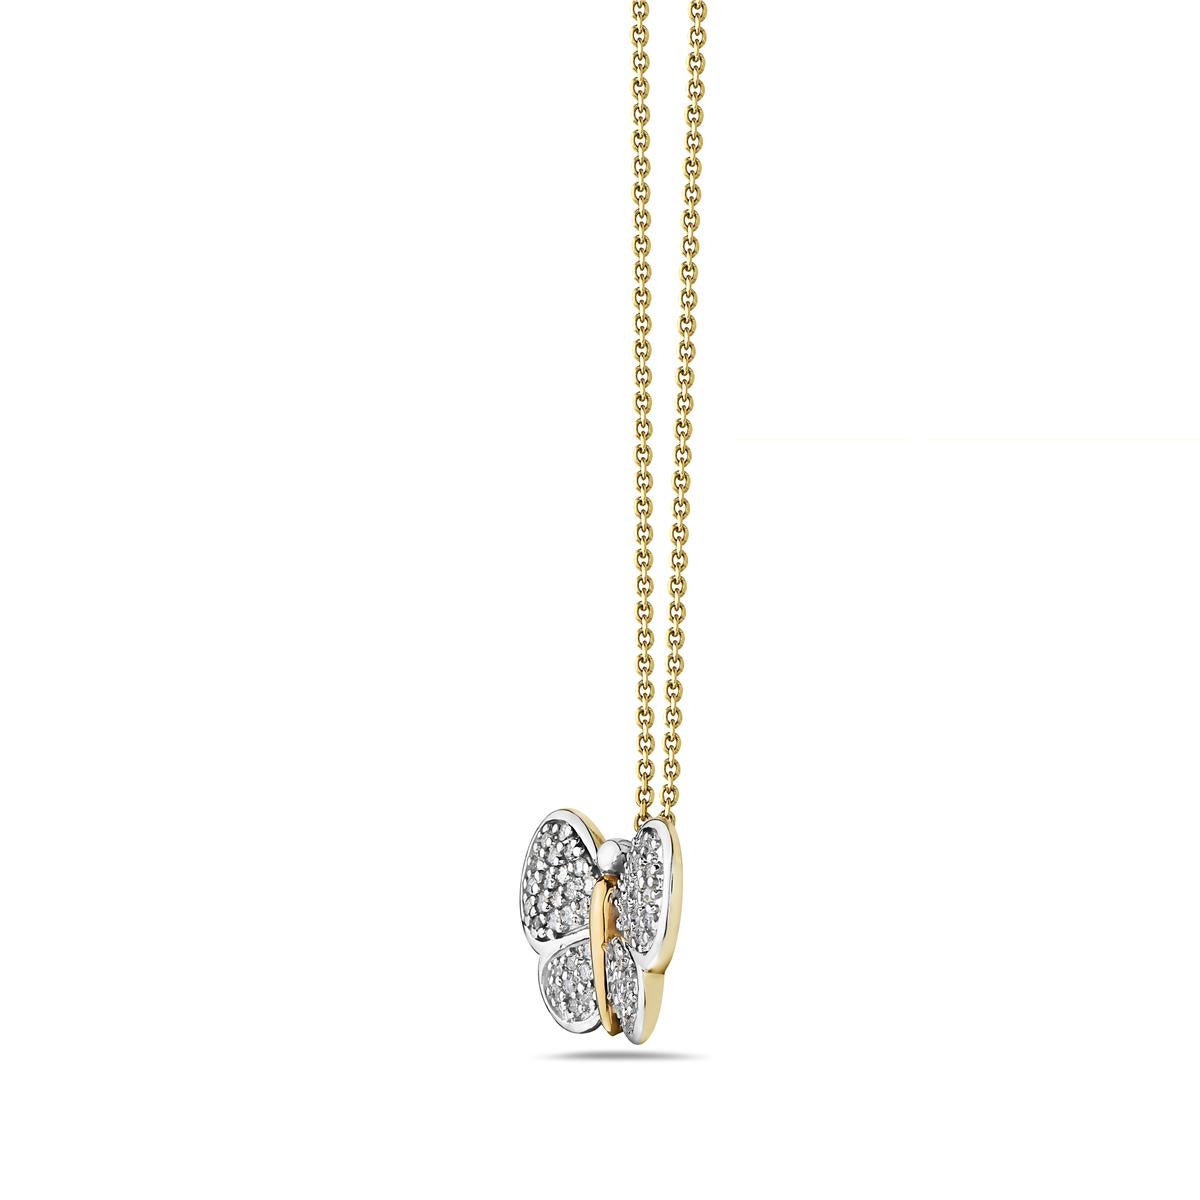 Ce collier présente 0,55 carats de diamants sertis en or jaune et blanc 14K. Fabriqué aux États-Unis

Visites disponibles dans notre salle d'exposition à New York sur rendez-vous.
